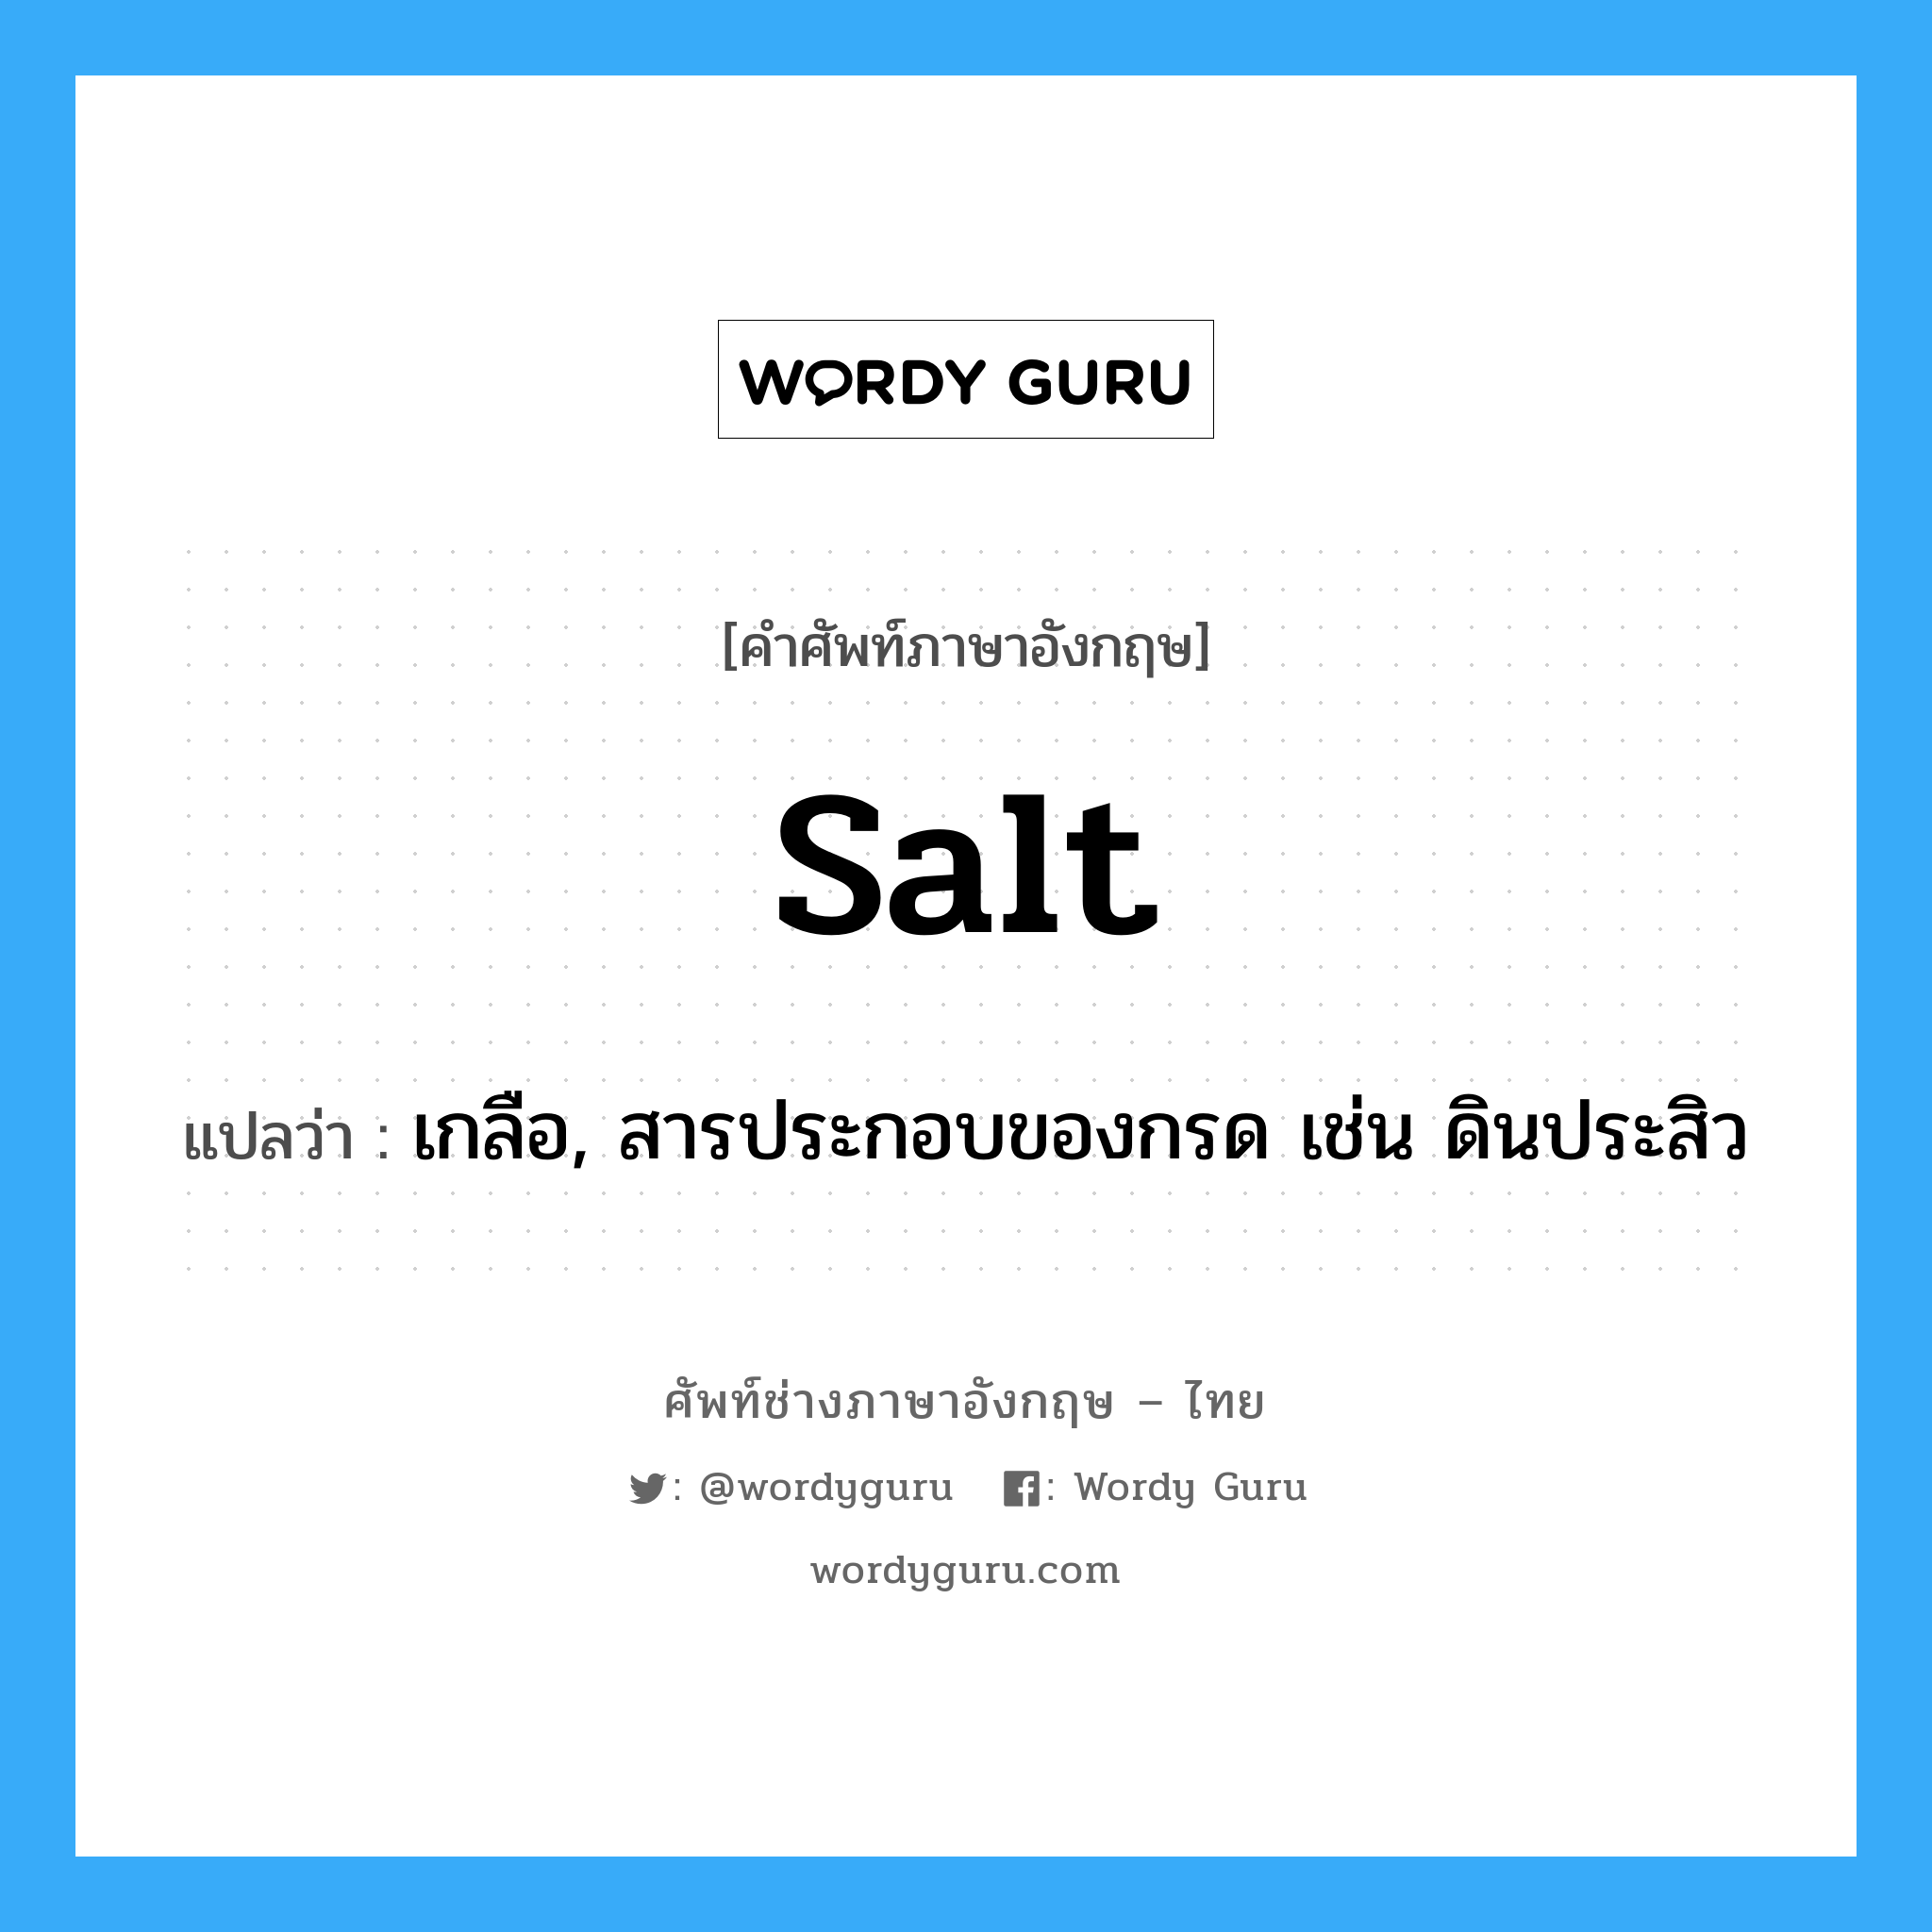 salt แปลว่า?, คำศัพท์ช่างภาษาอังกฤษ - ไทย salt คำศัพท์ภาษาอังกฤษ salt แปลว่า เกลือ, สารประกอบของกรด เช่น ดินประสิว